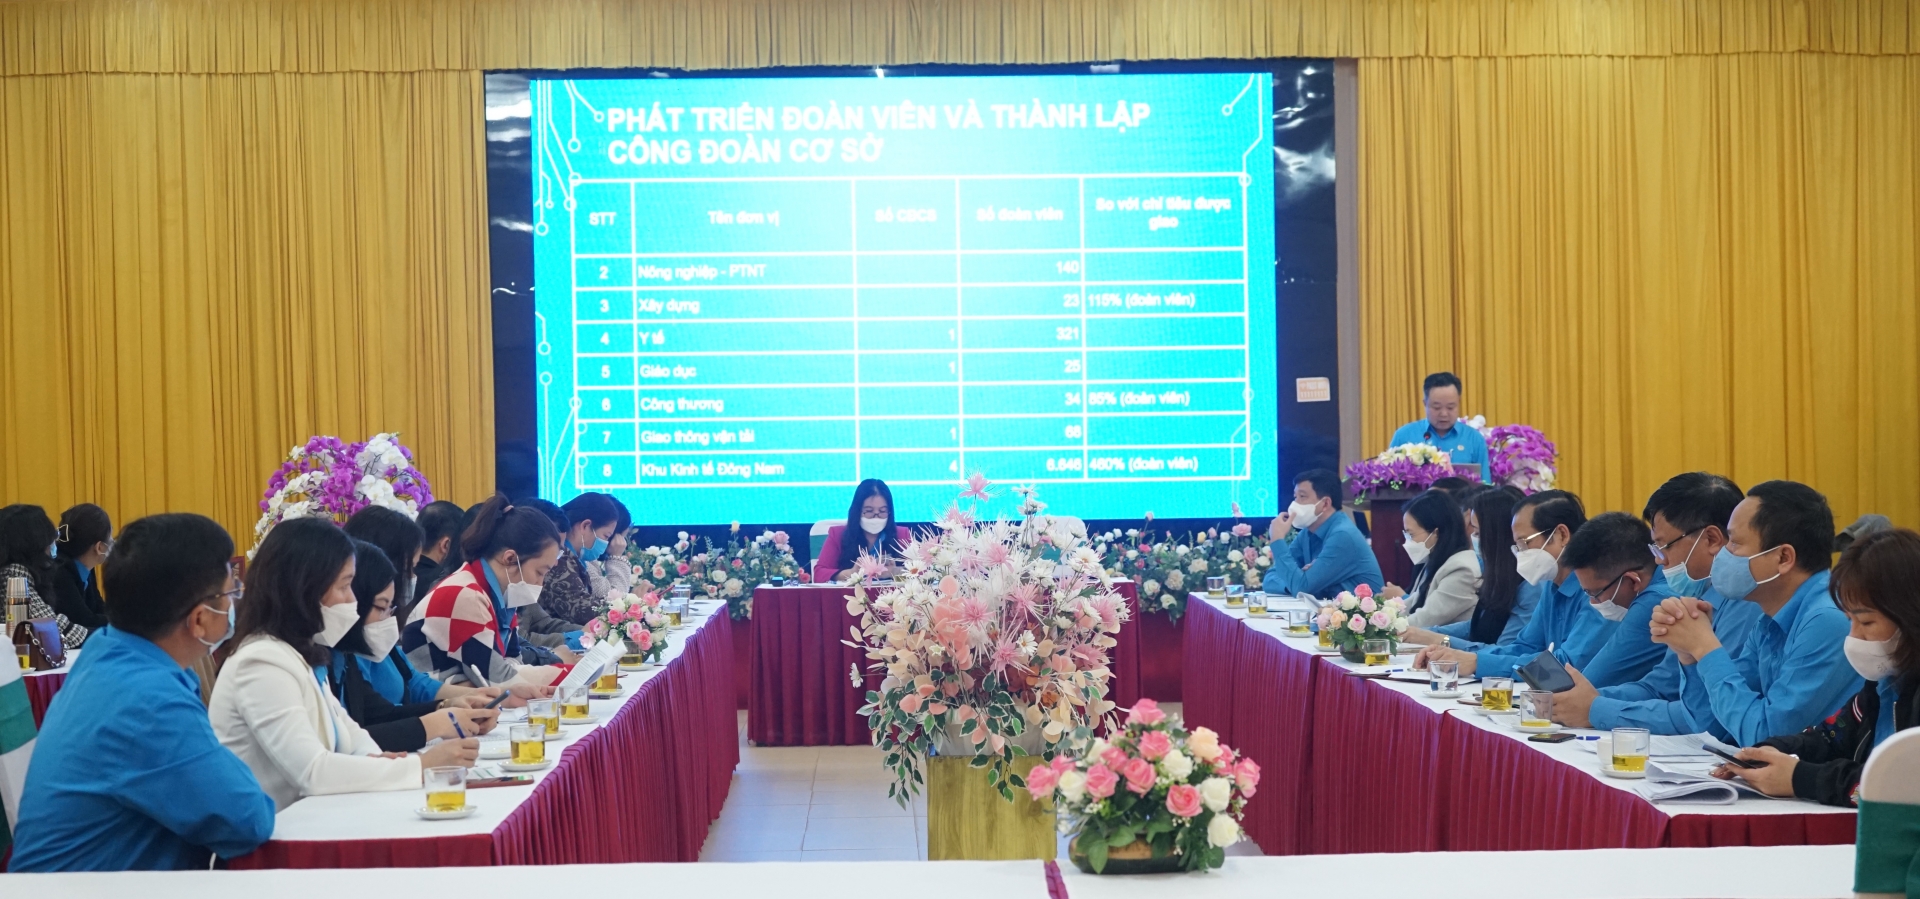 Cụm thi đua công đoàn ngành LĐLĐ tỉnh Nghệ An đạt nhiều kết quả nổi bật trong năm